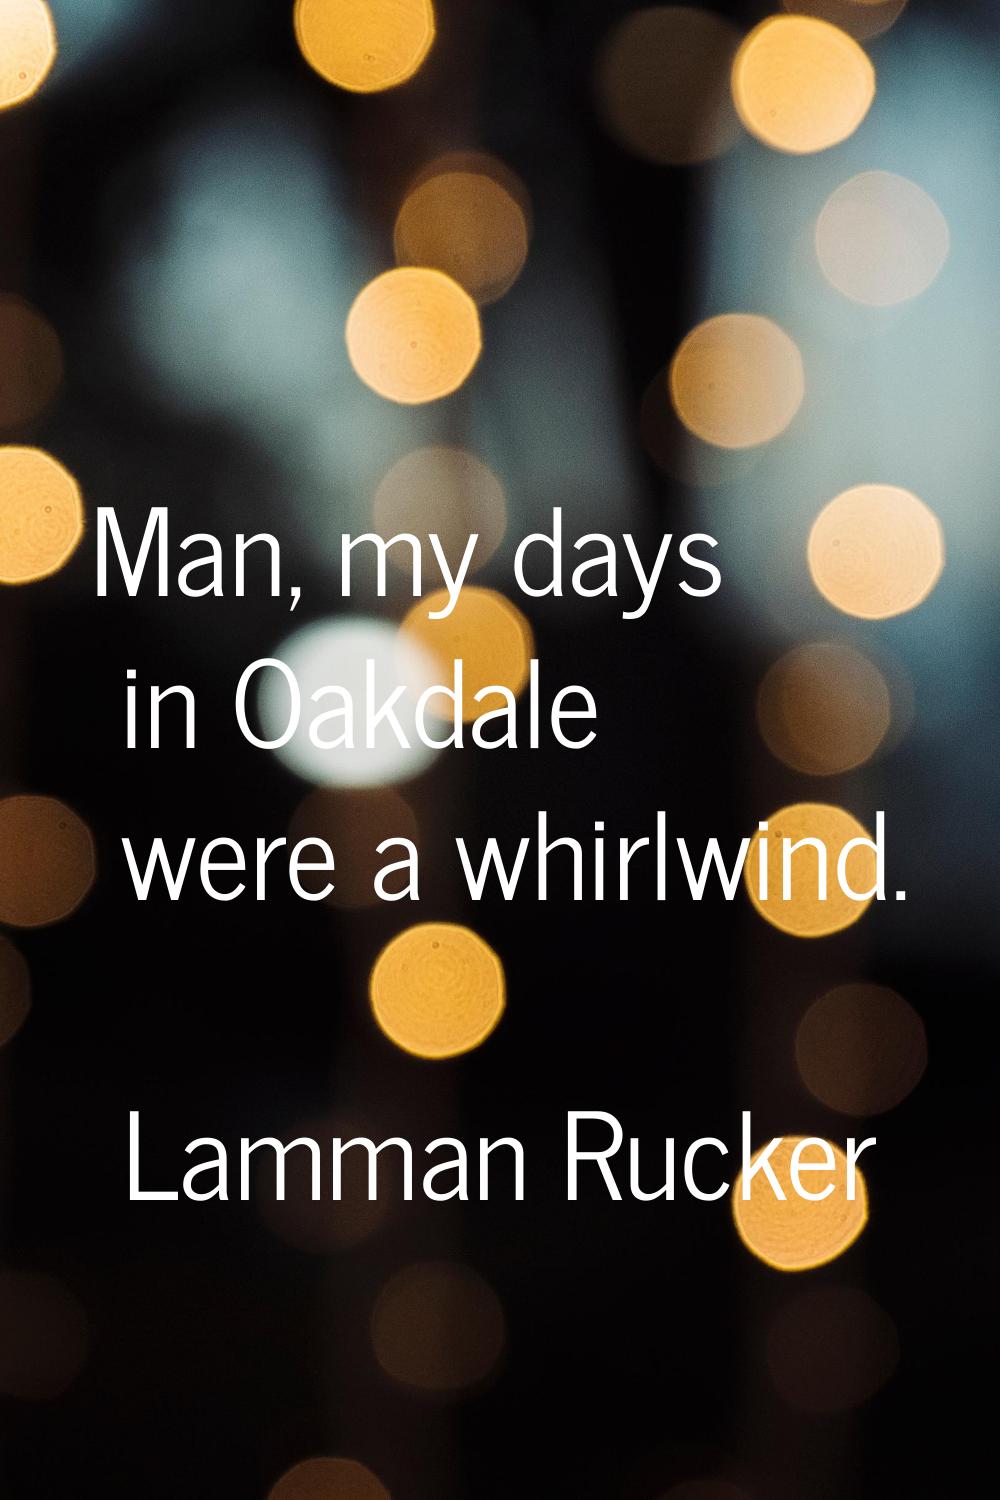 Man, my days in Oakdale were a whirlwind.